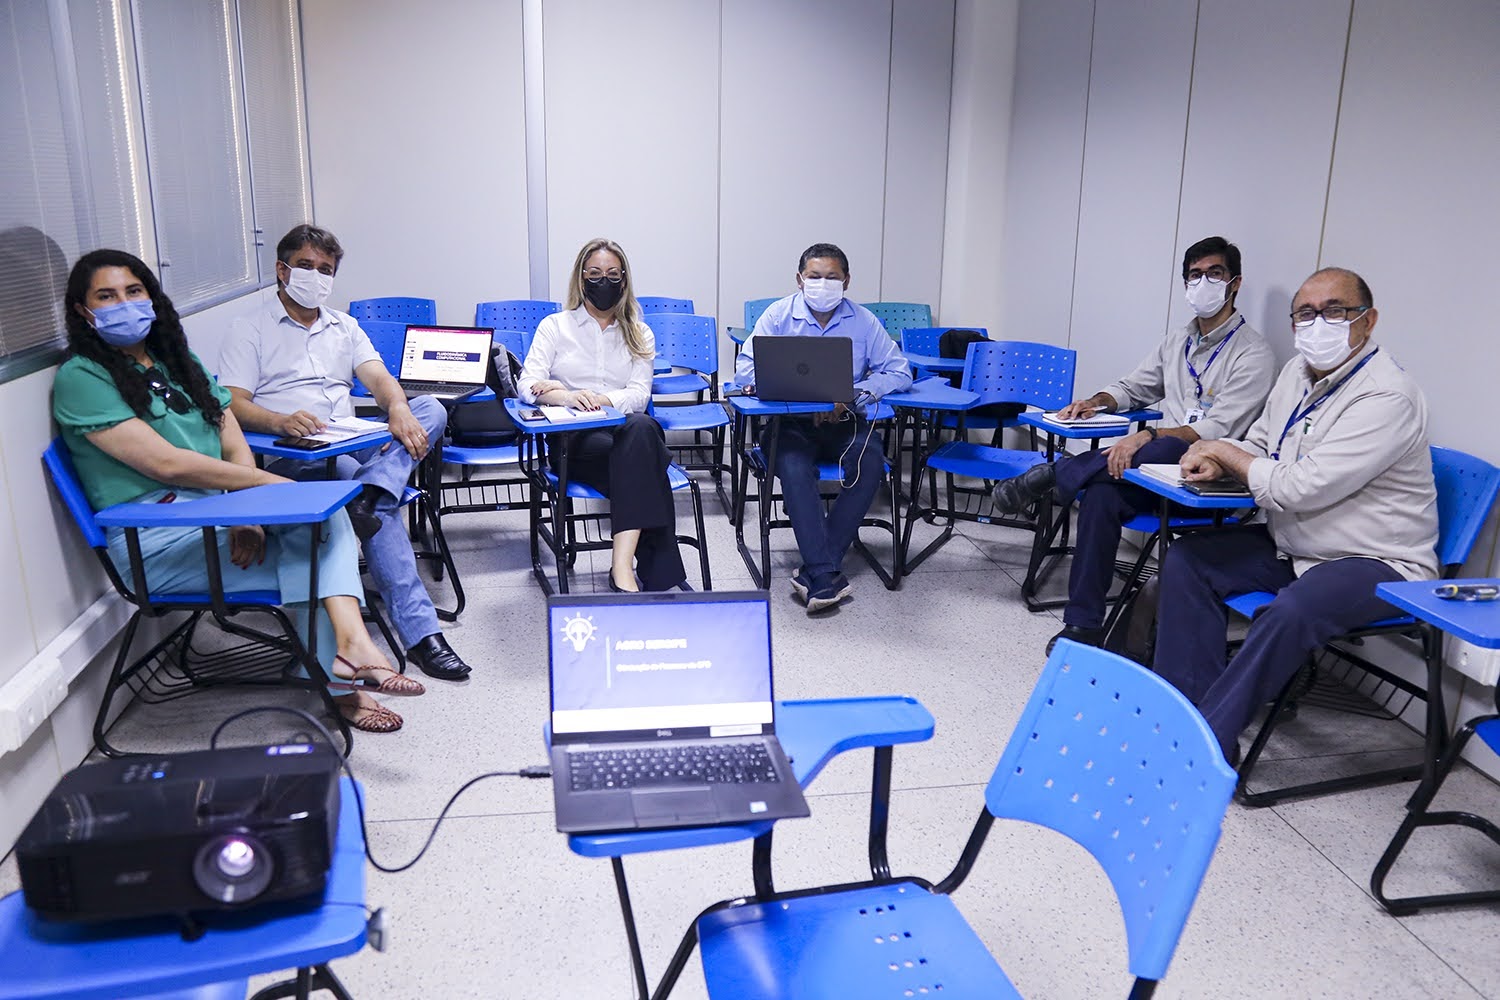 Reunião marca início de pesquisas conjuntas entre pesquisadores da UFS e da Unigel. (Fotos: Adilson Andrade - Ascom UFS)